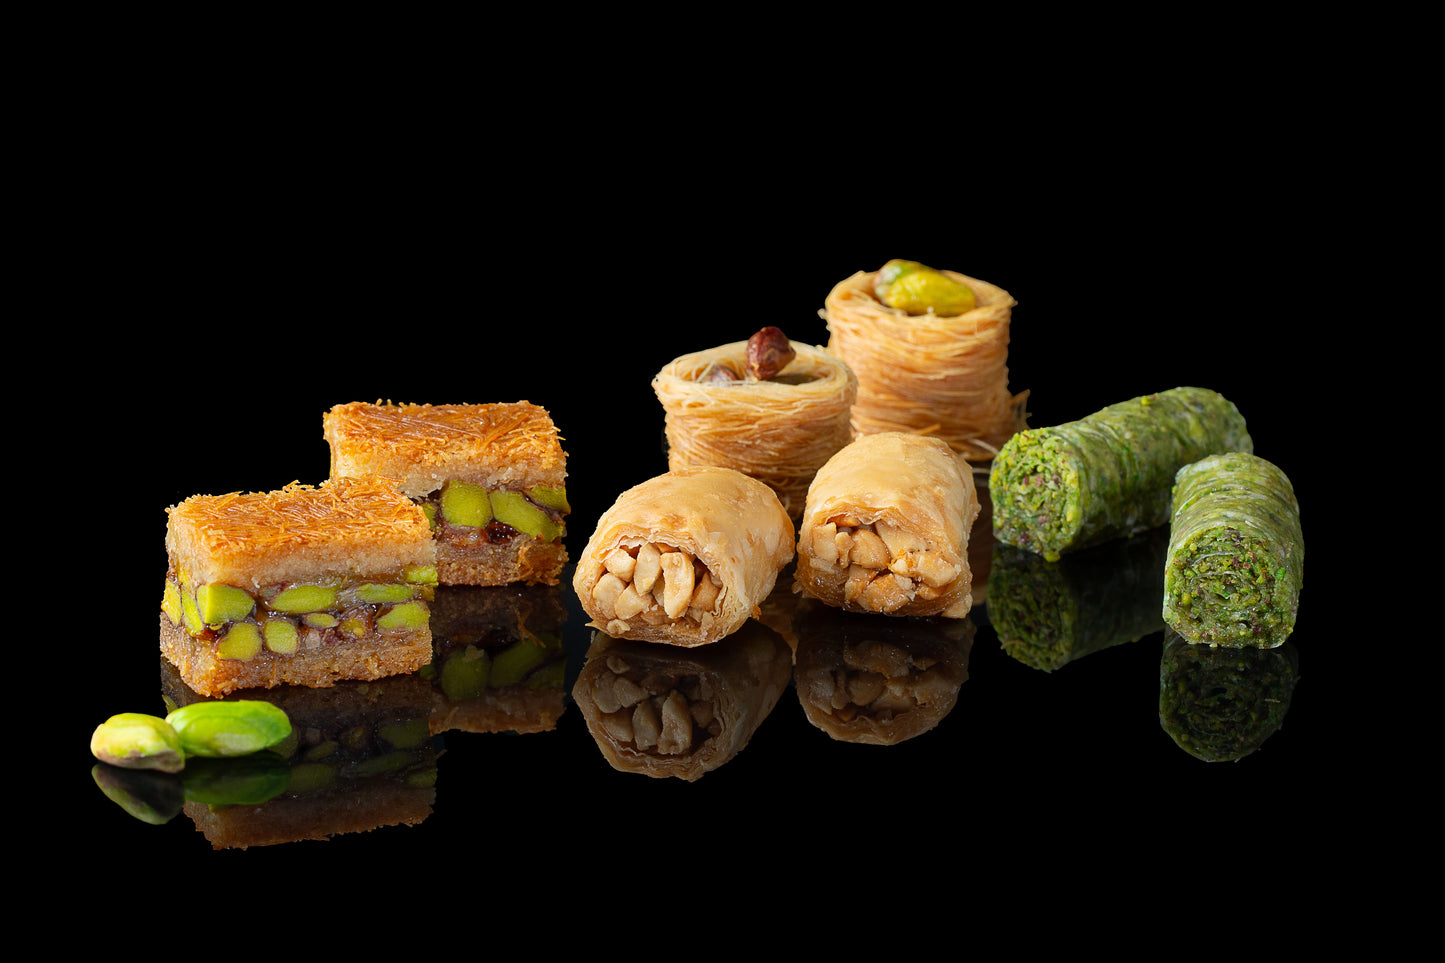 
                  
                    Mughe Gourmet Turkish Baklava Assortment 150g Gift Box - XSmall Bakery Dessert Pastry Assortment
                  
                